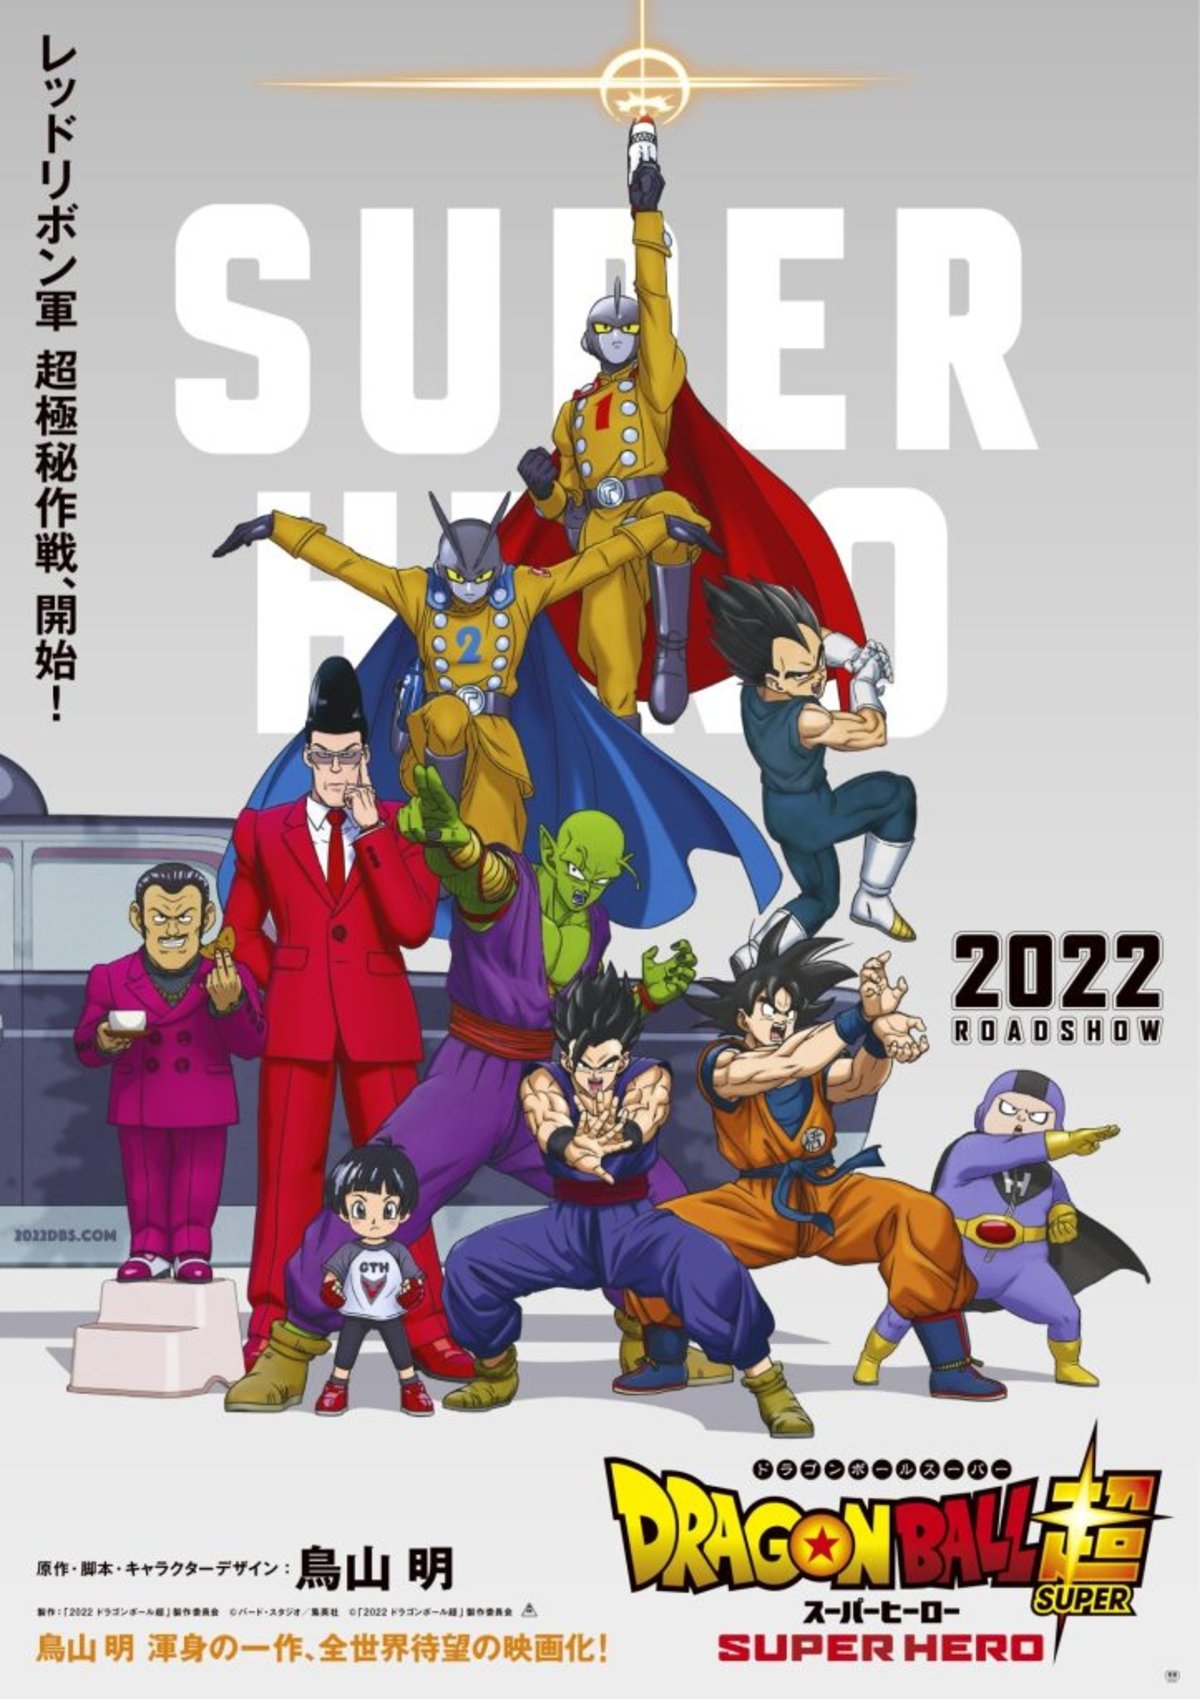 Dragon Ball Super: Super Hero comparte una nueva imagen promocional con Goku y toda su familia